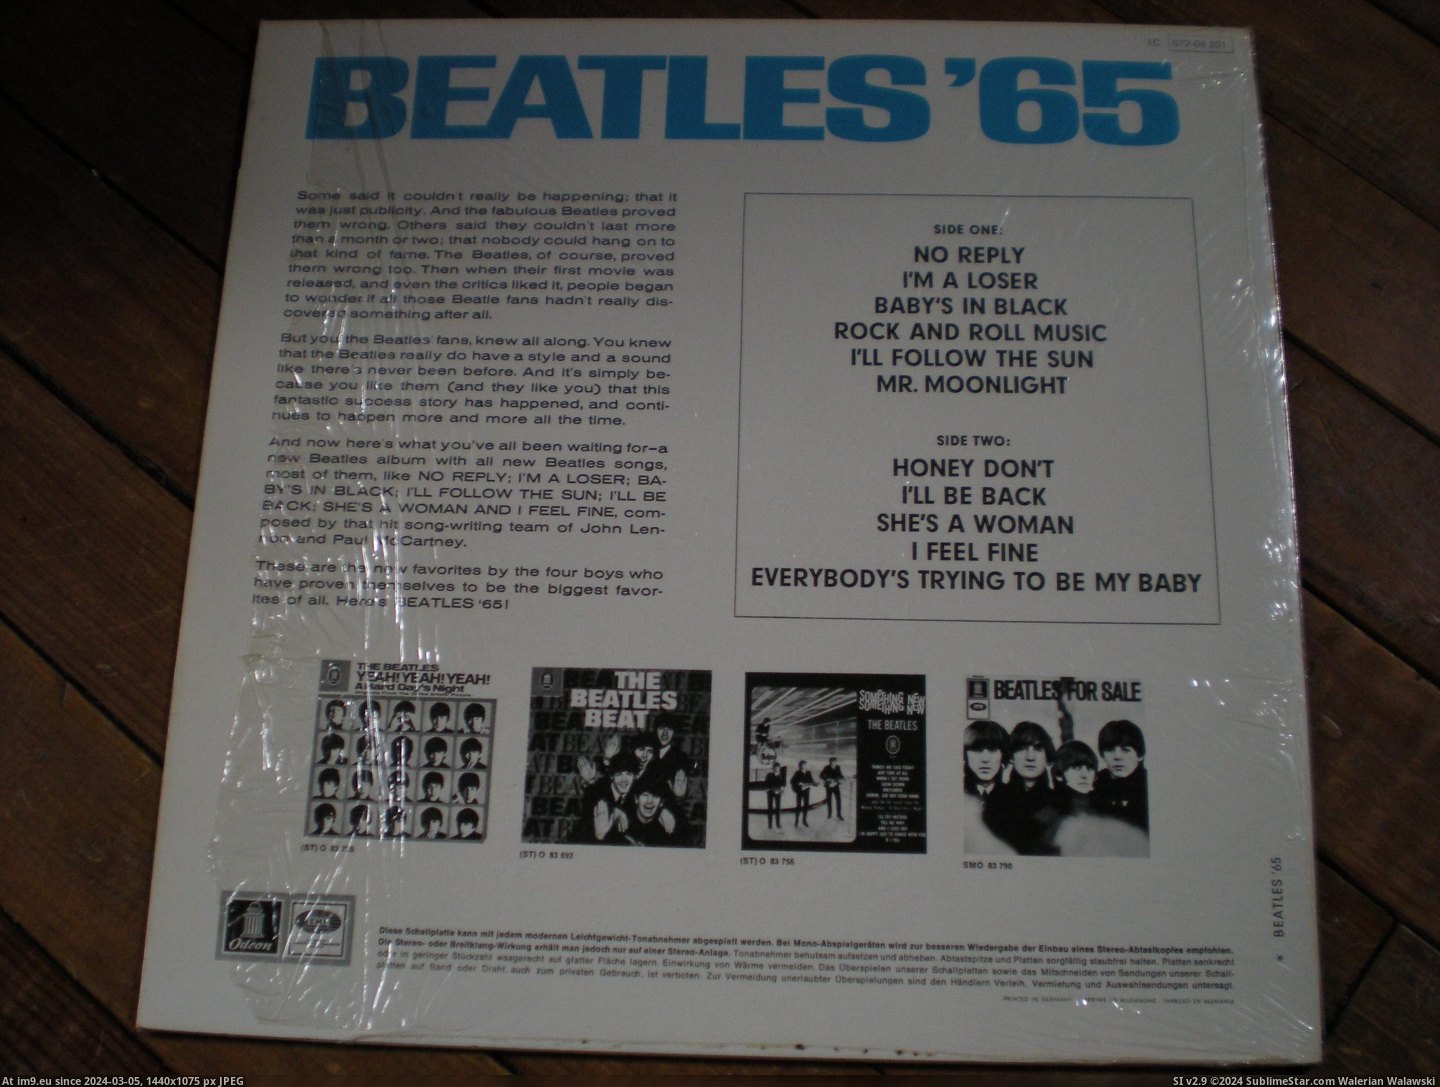  #Beatles  Beatles 65 7 Pic. (Изображение из альбом new 1))